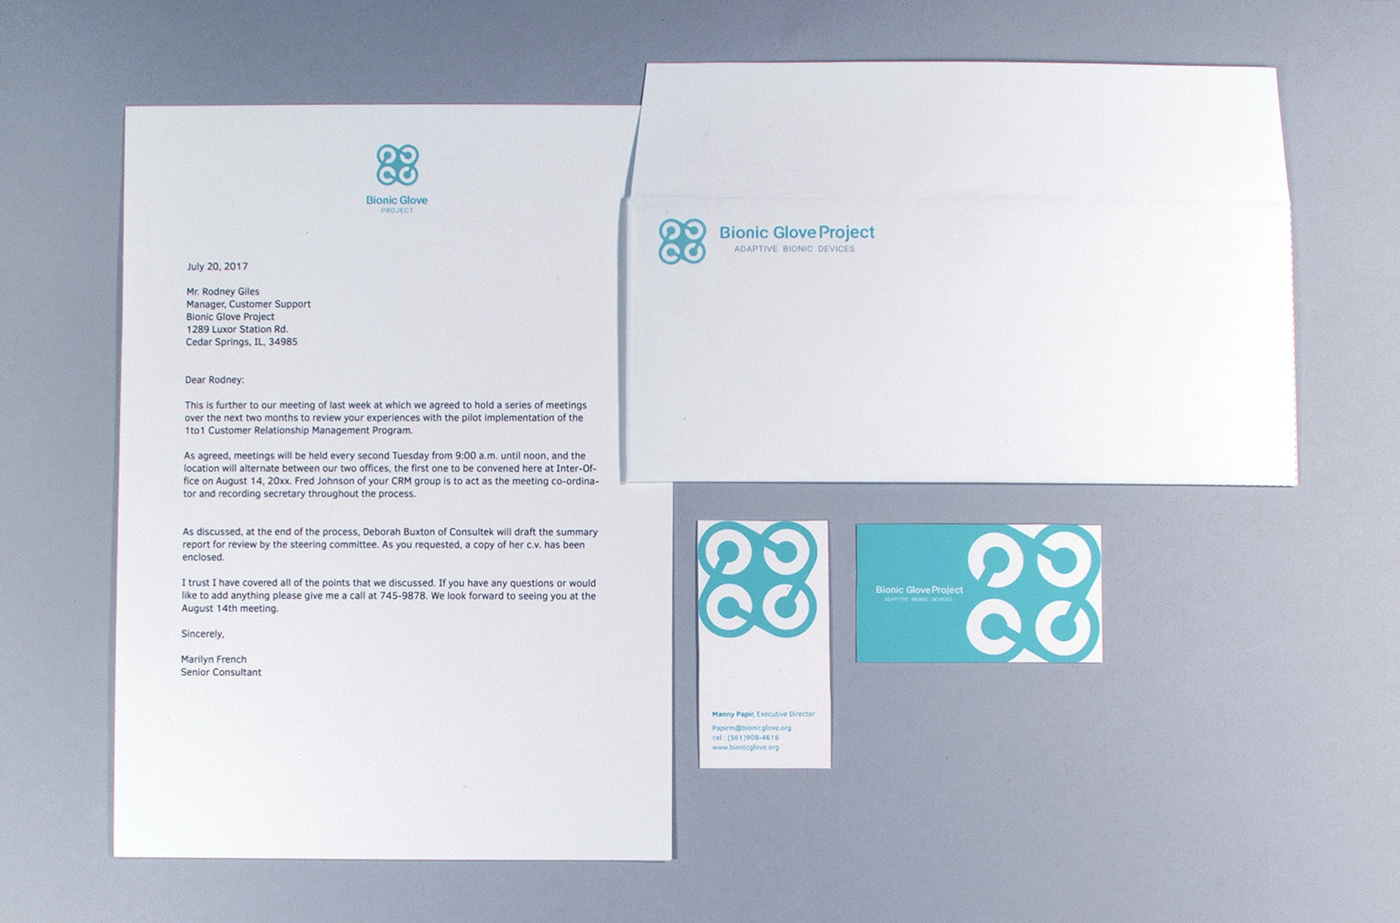 stationary branding  brand identity graphic design  adobe illustrator letterhead envelope business card